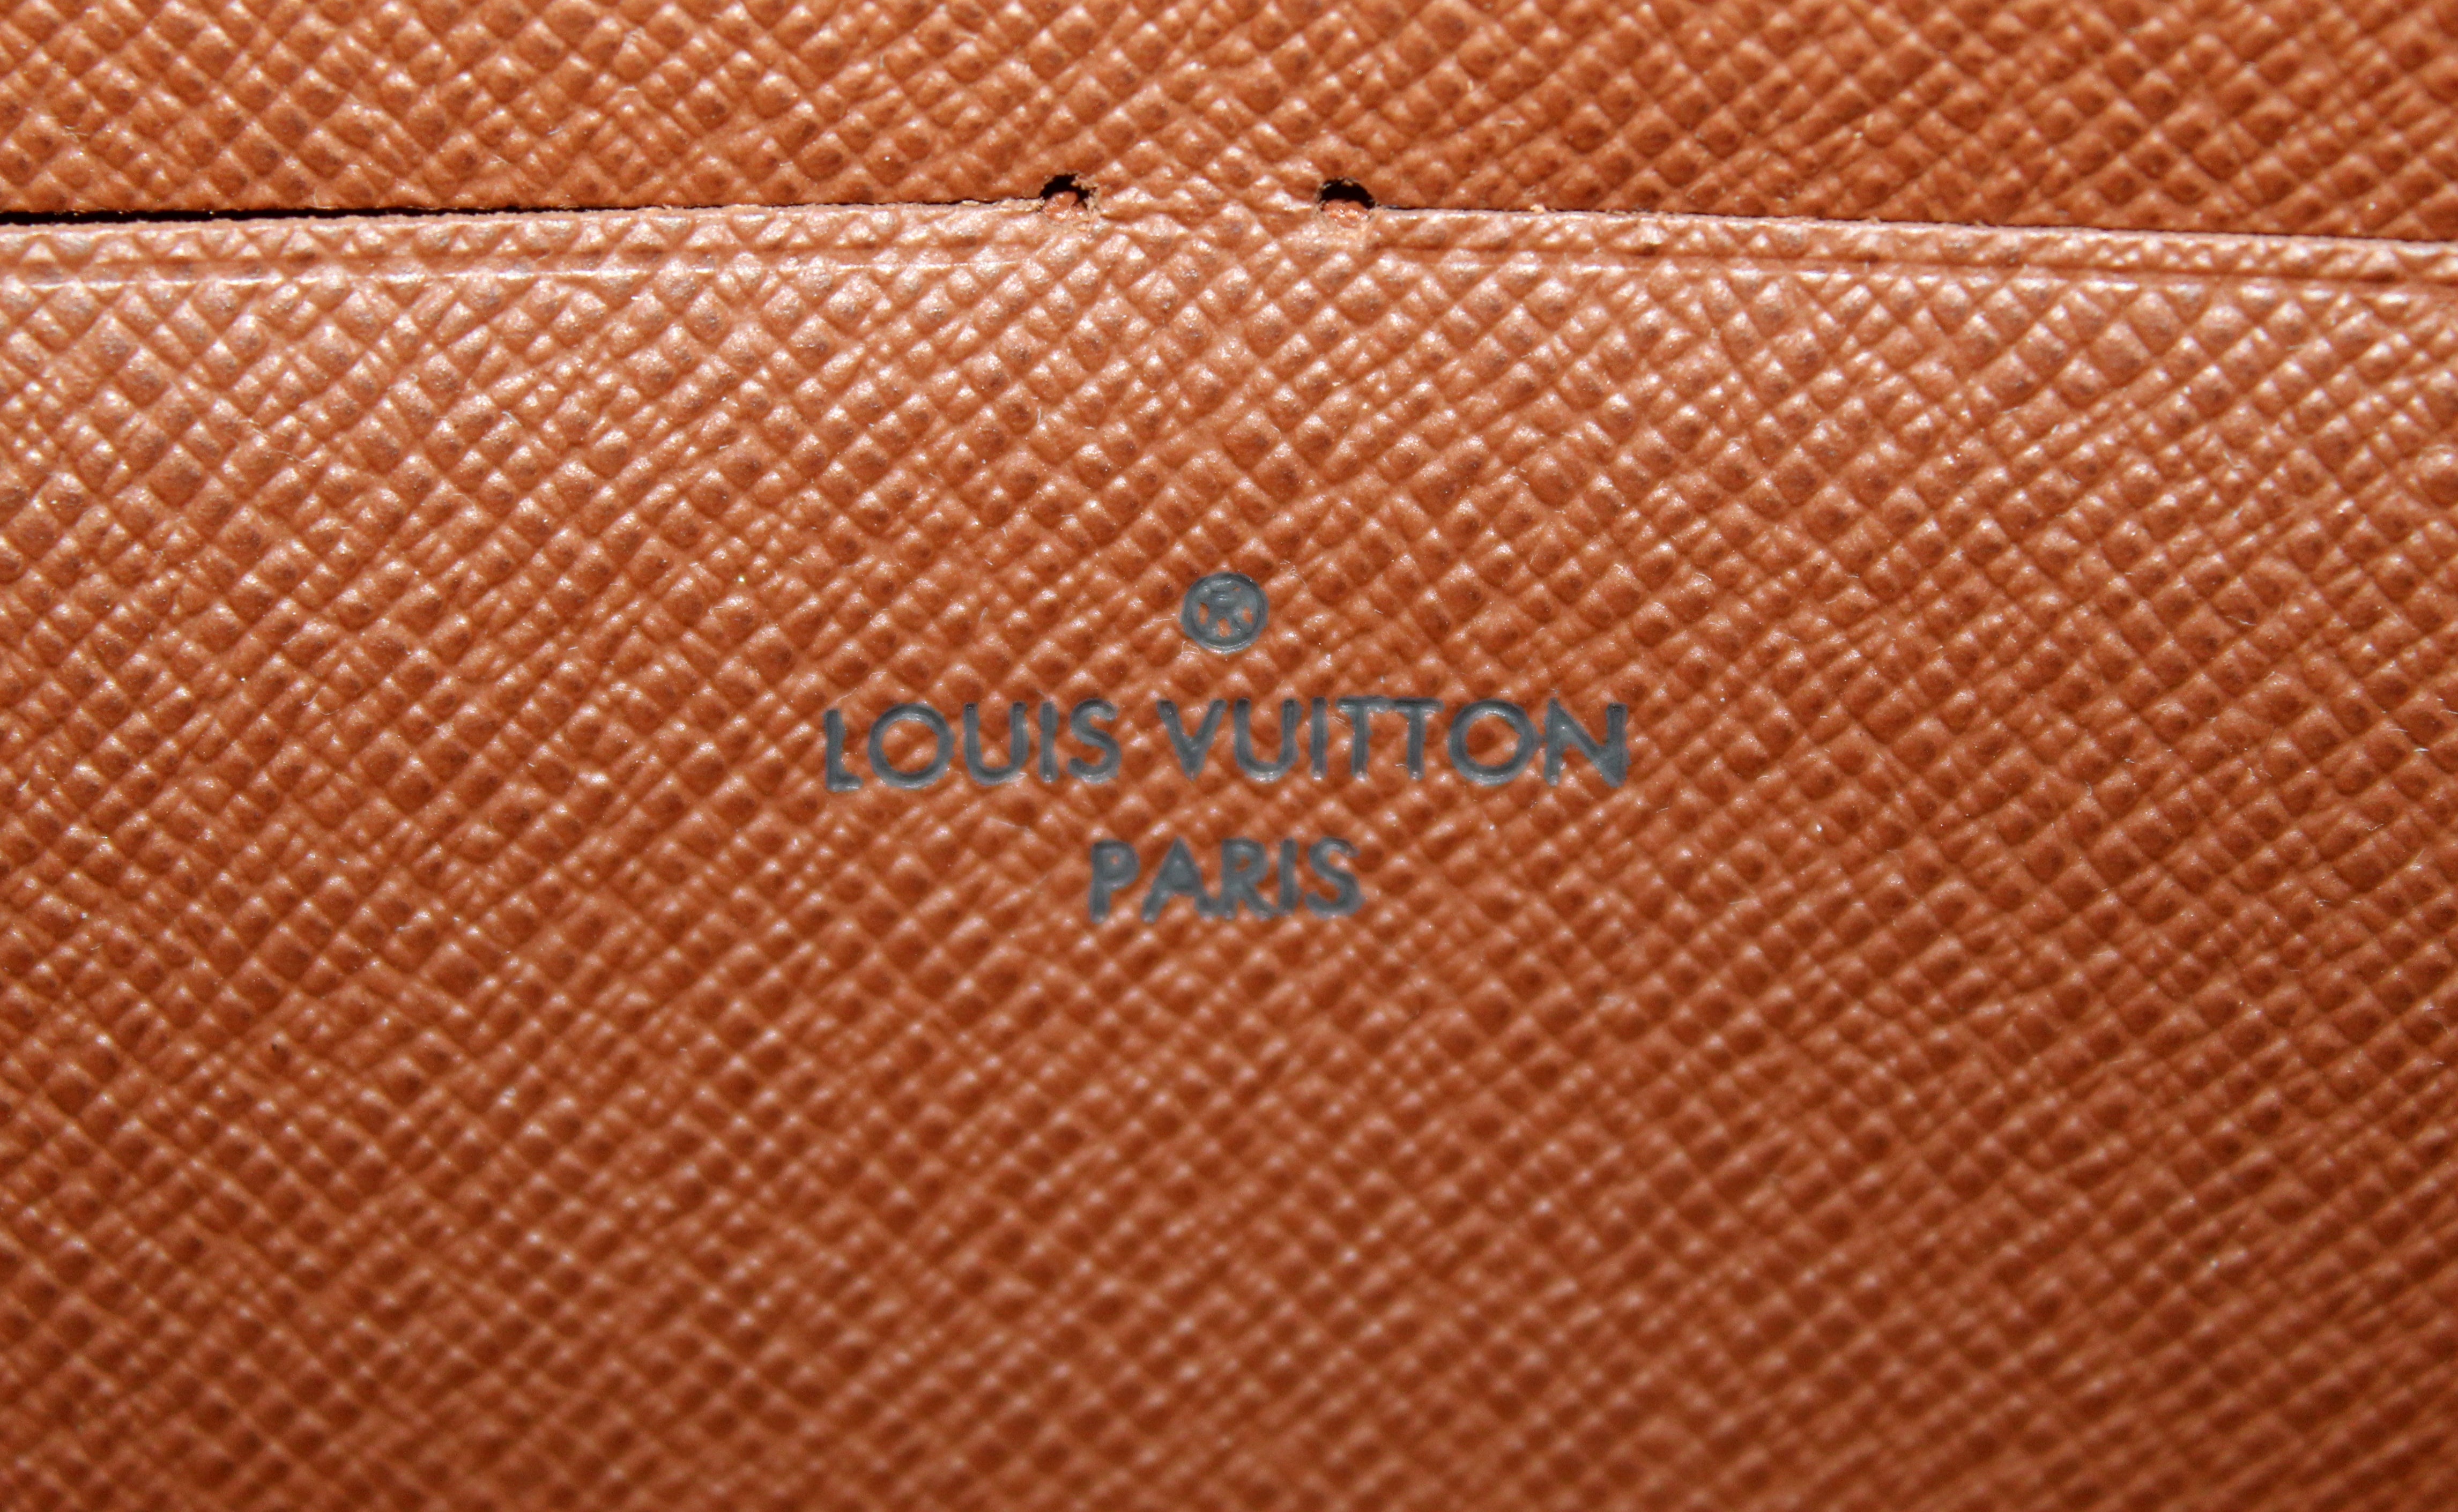 Authentic Louis Vuitton Classic Monogram Canvas Zippy Wallet